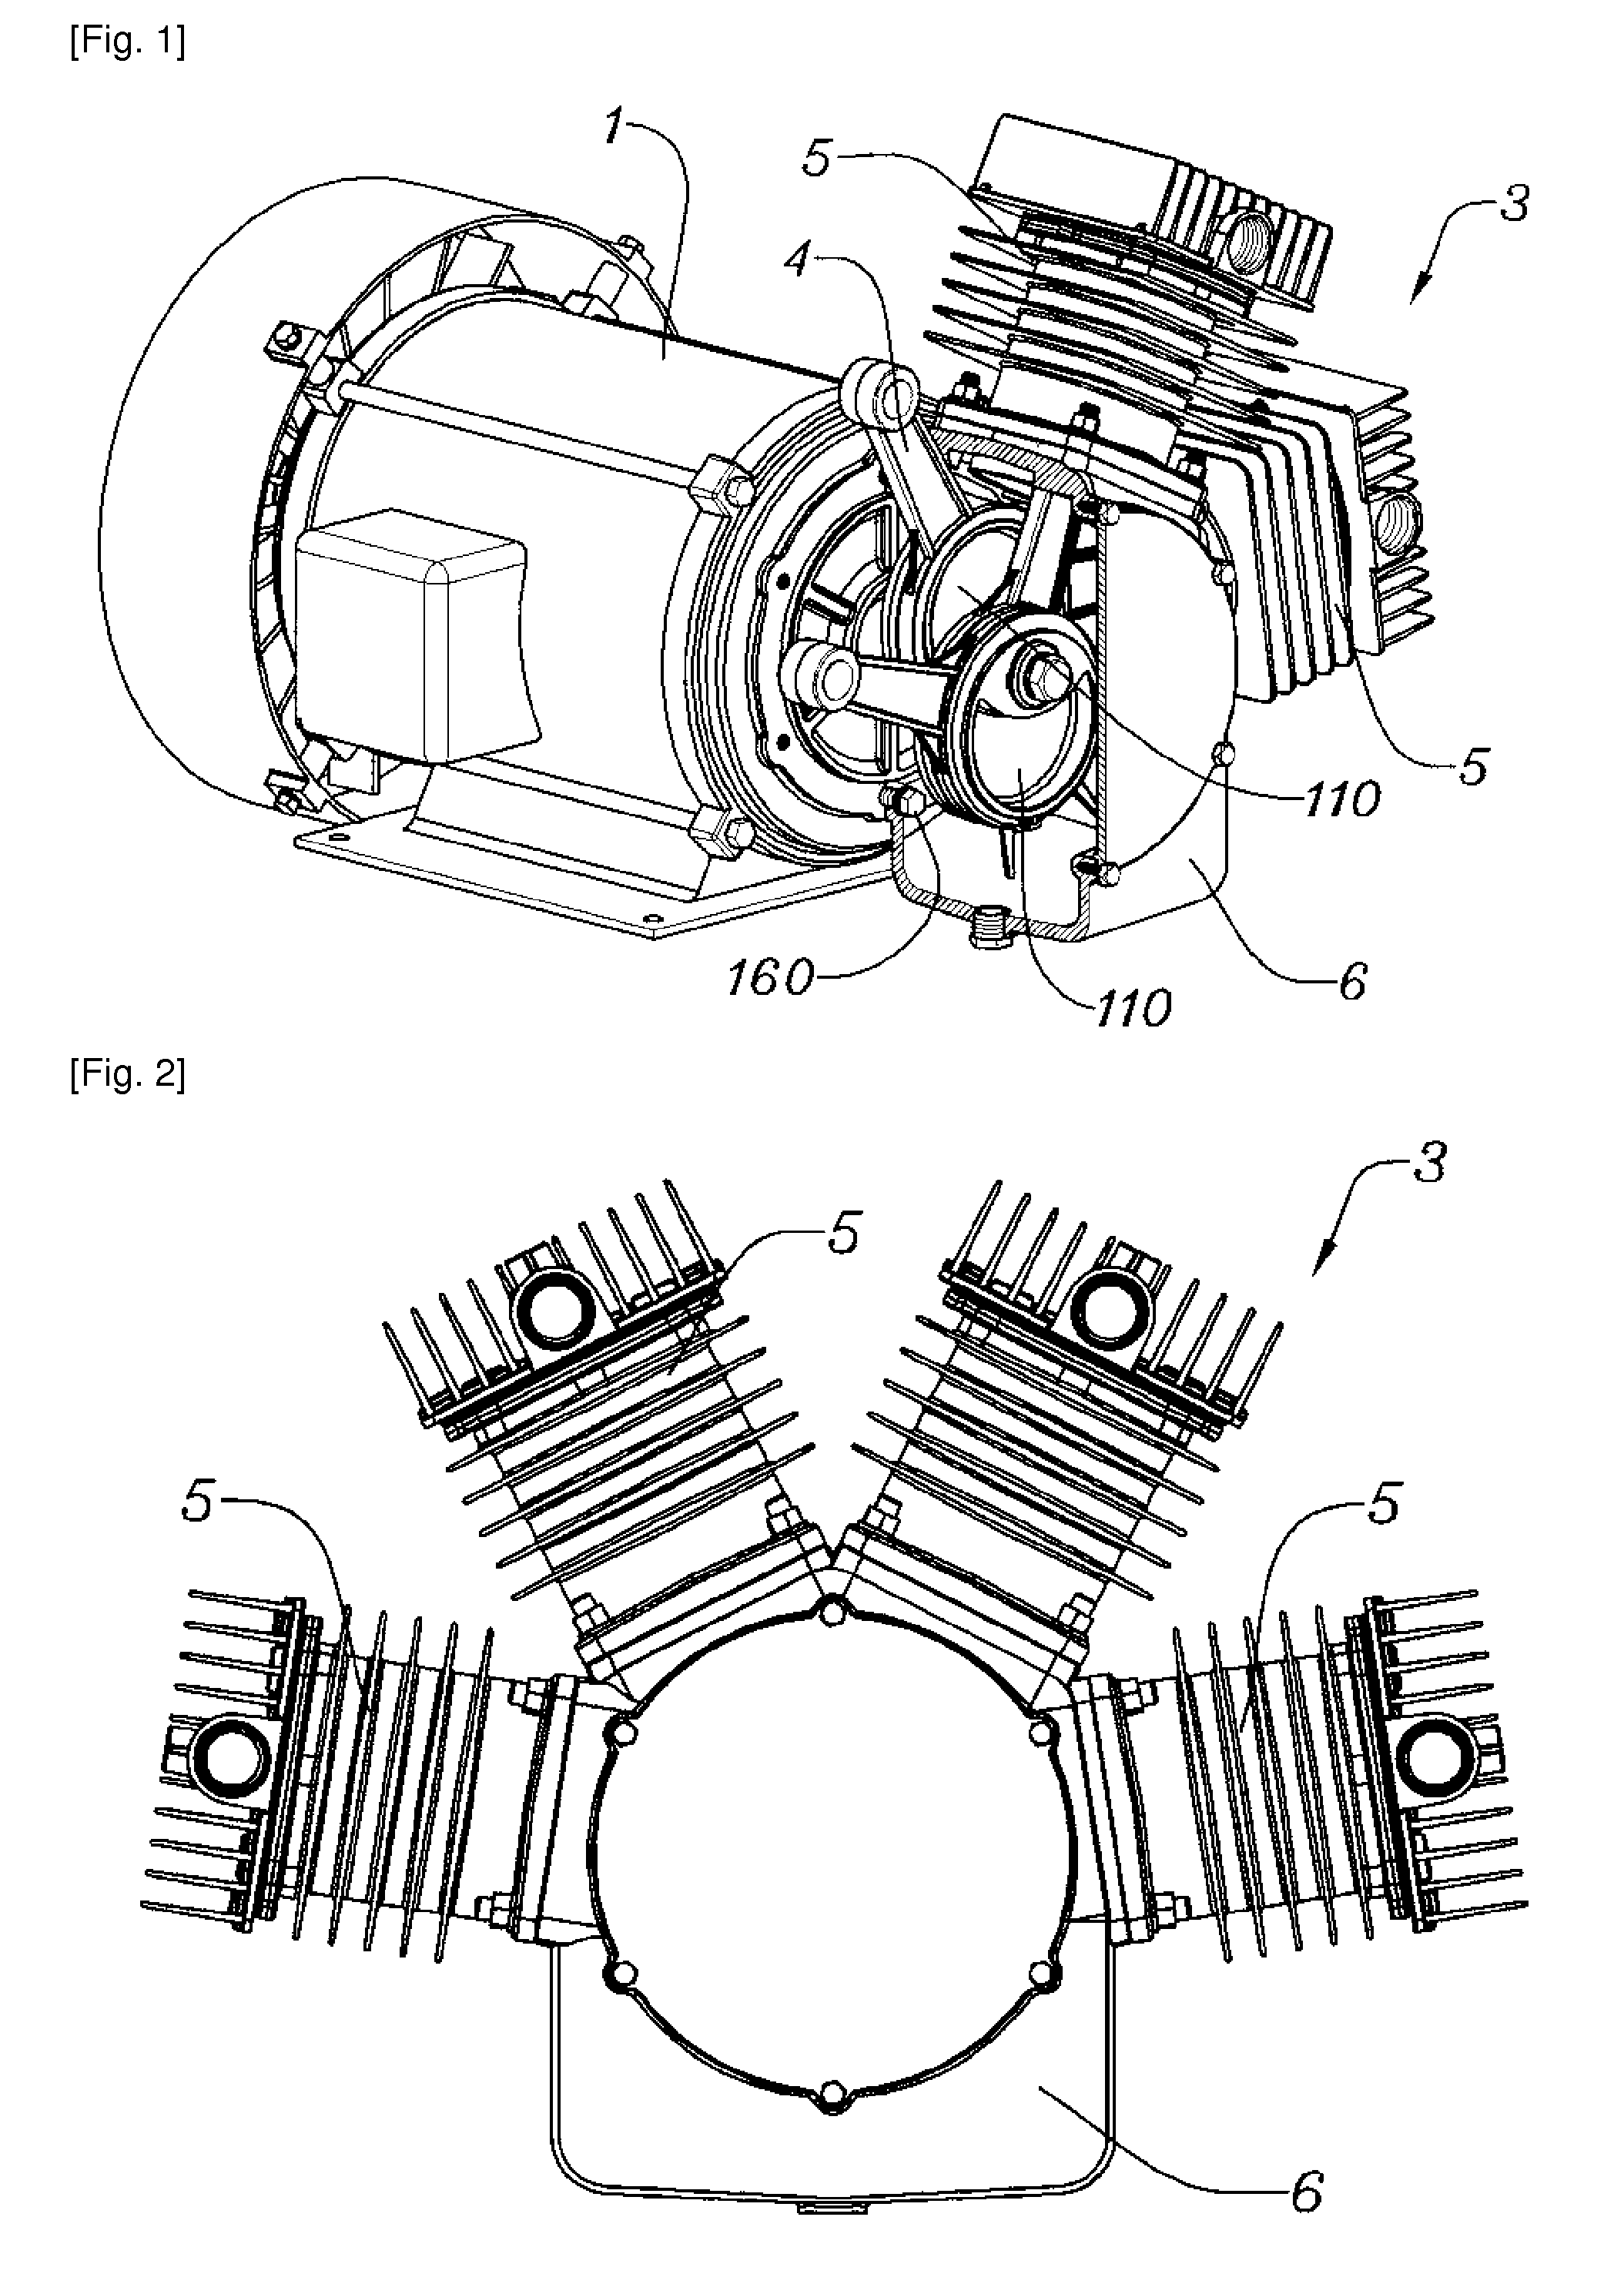 Direct crankshaft of air compressor